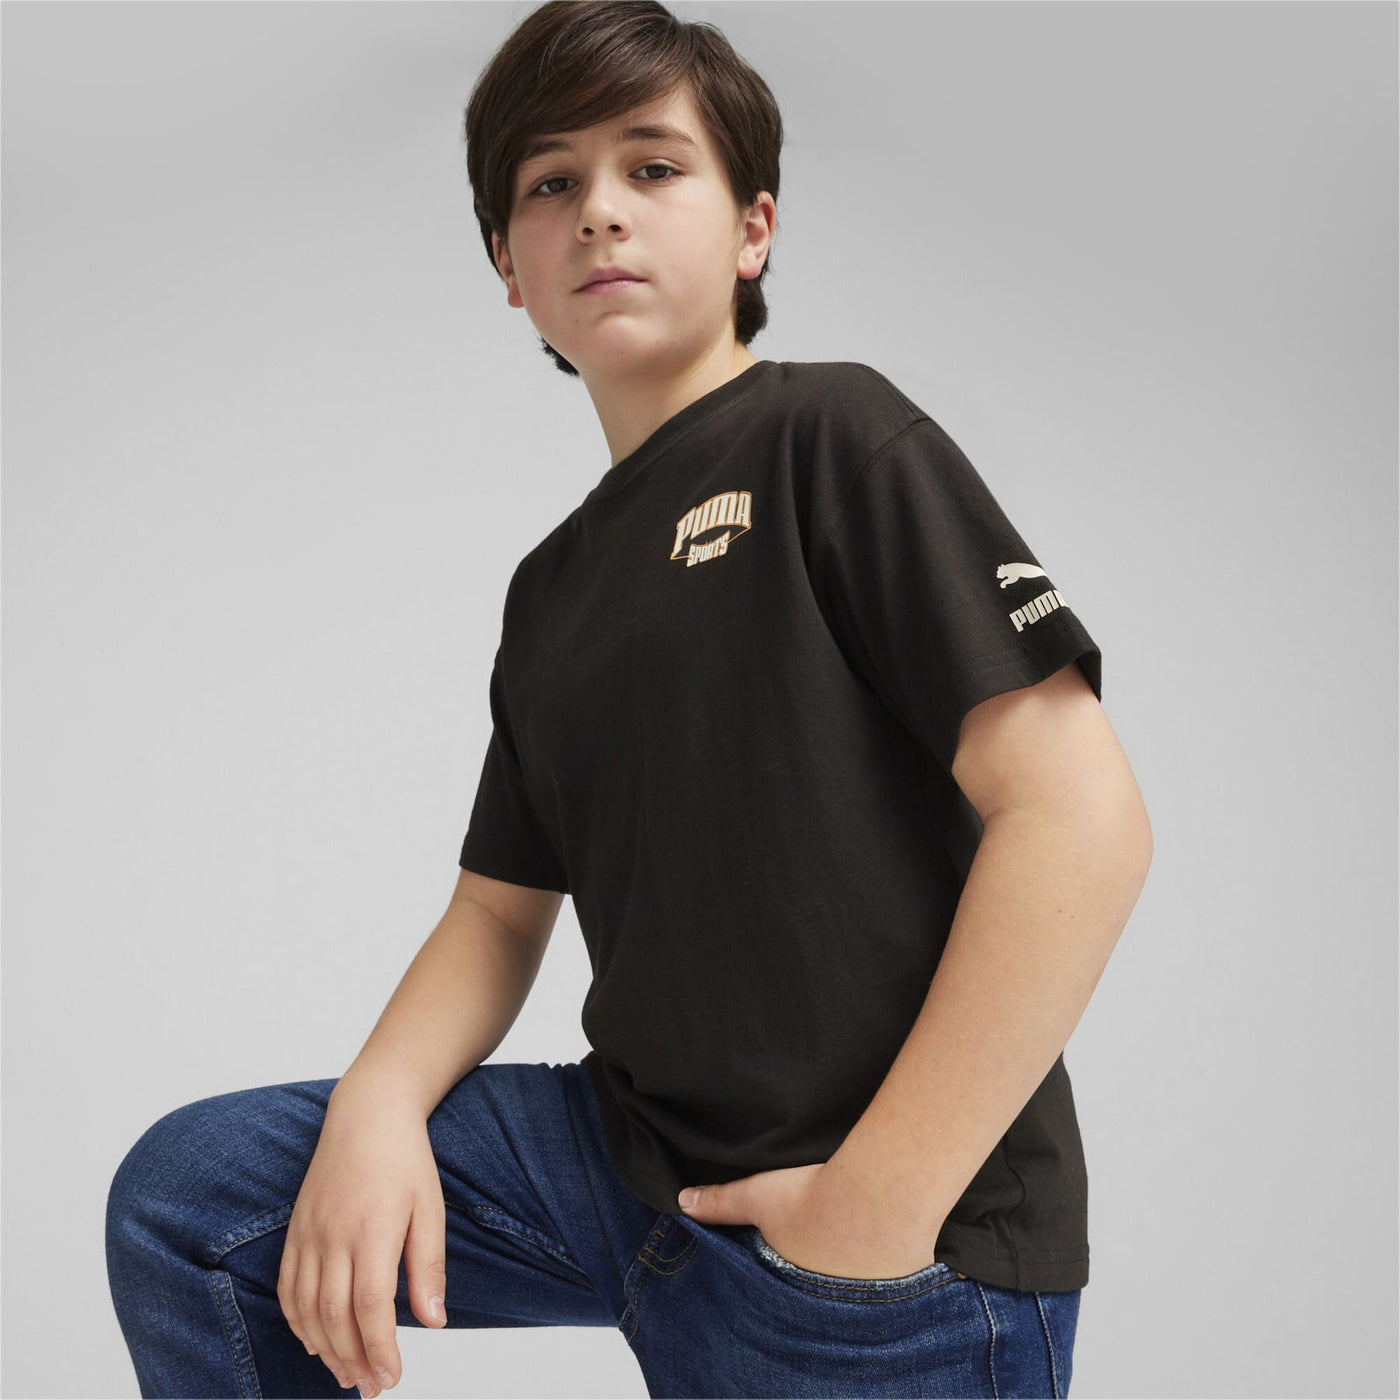 625134-01 - T-Shirt - Puma